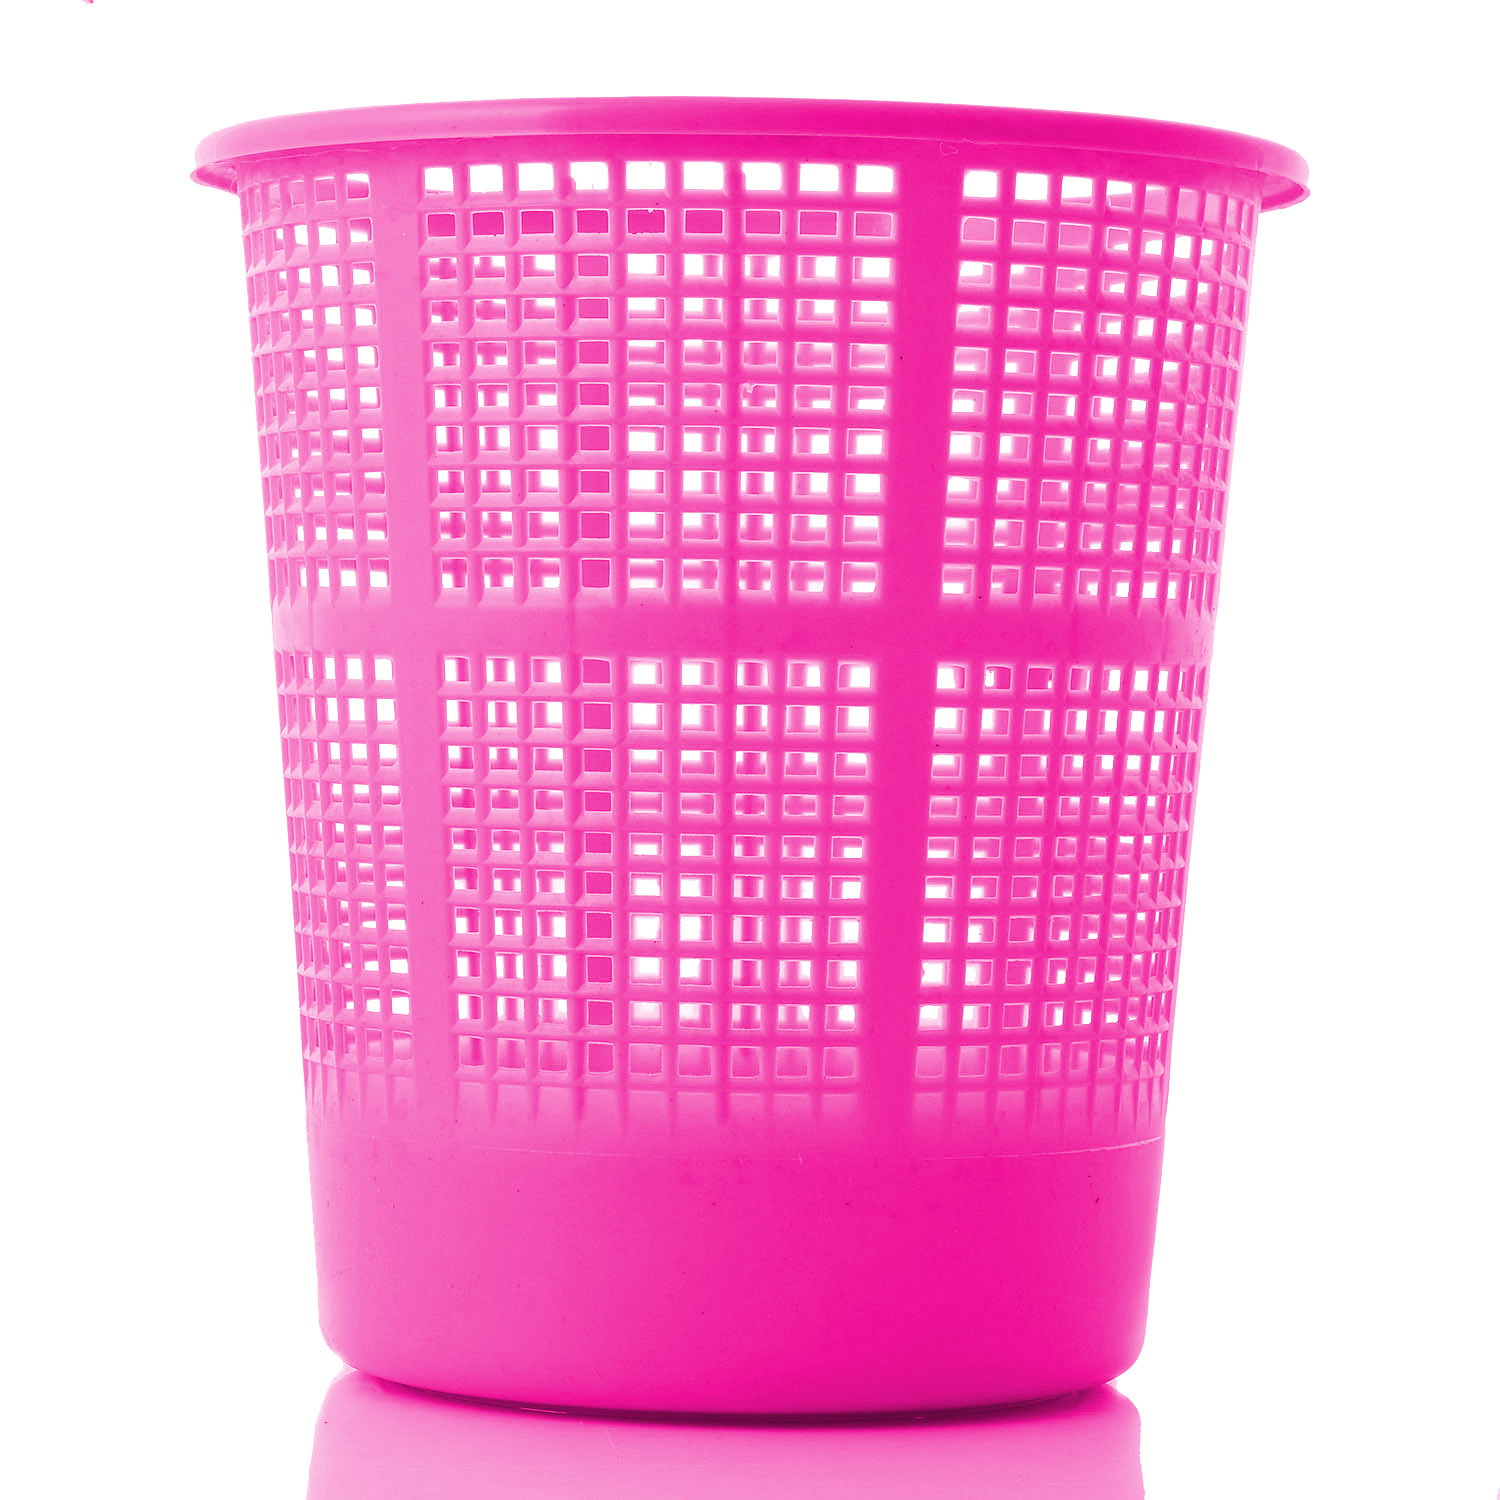 Kuber Industries Plastic Mesh Dustbin Garbage Bin for Office use, School, Bedroom,Kids Room, Home, Multi Purpose,5 Liters (Blue & Brown & Pink)-KUBMART278